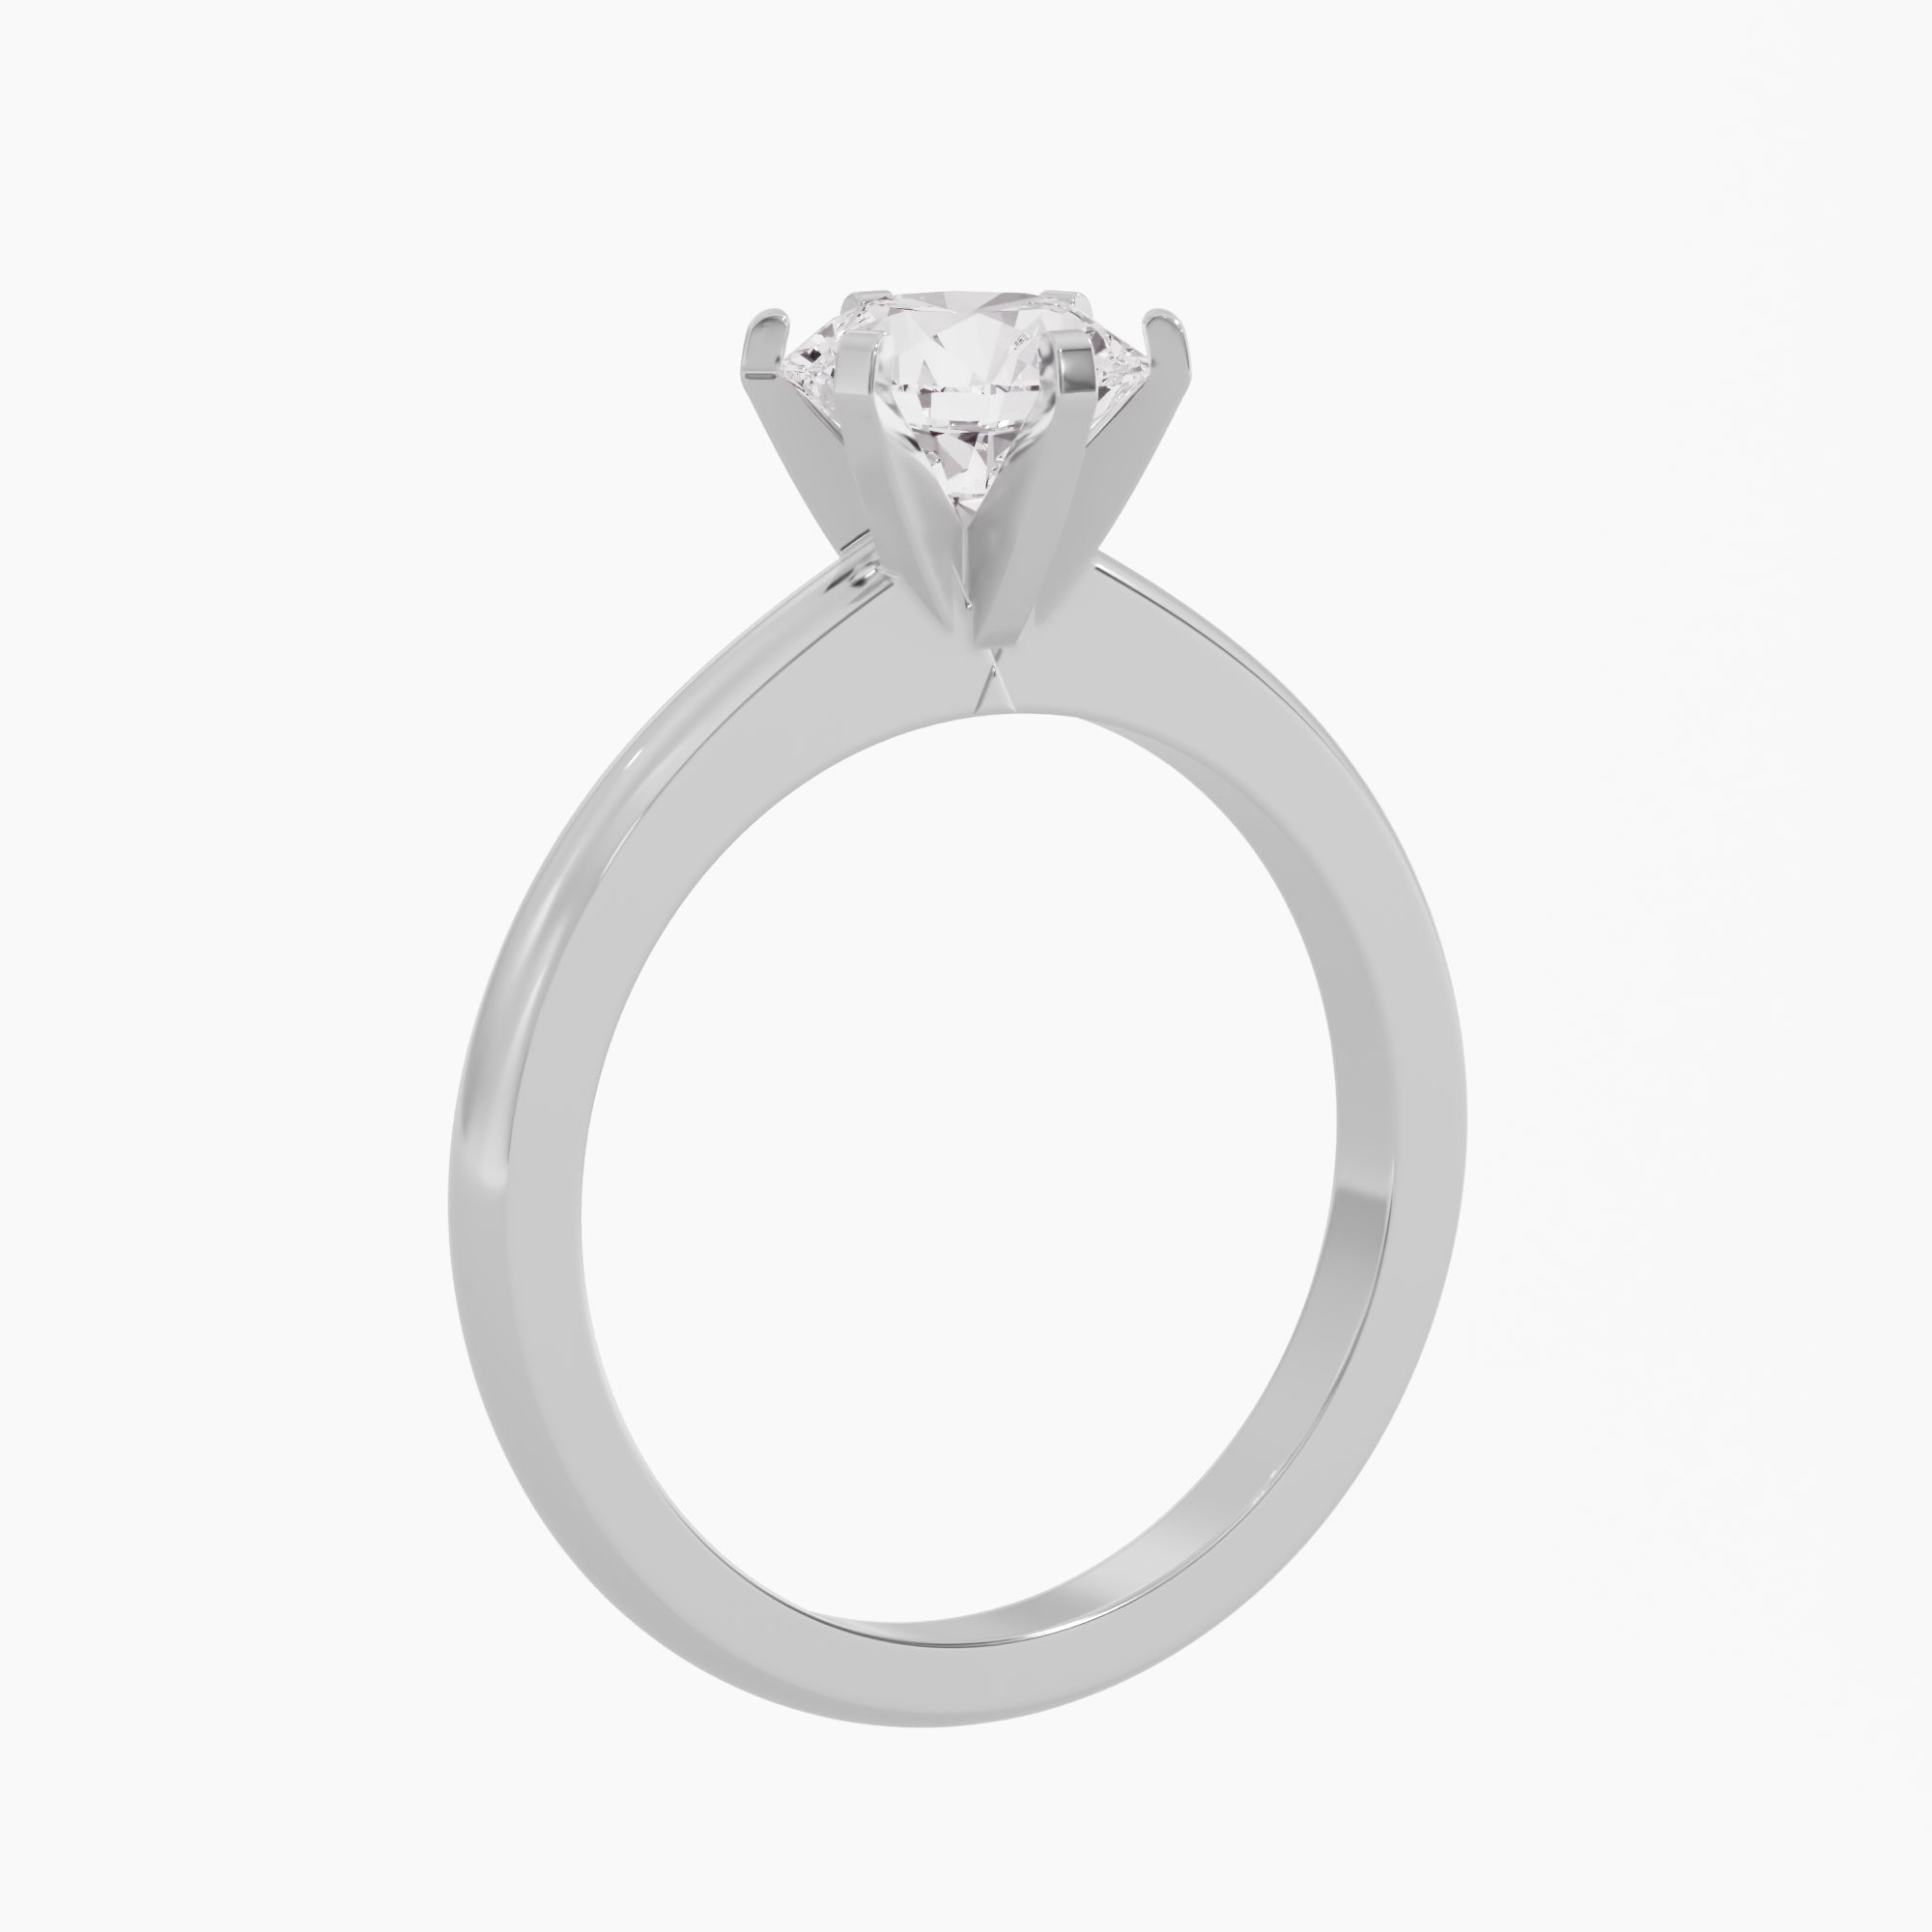 Princess Crown Diamond Ring